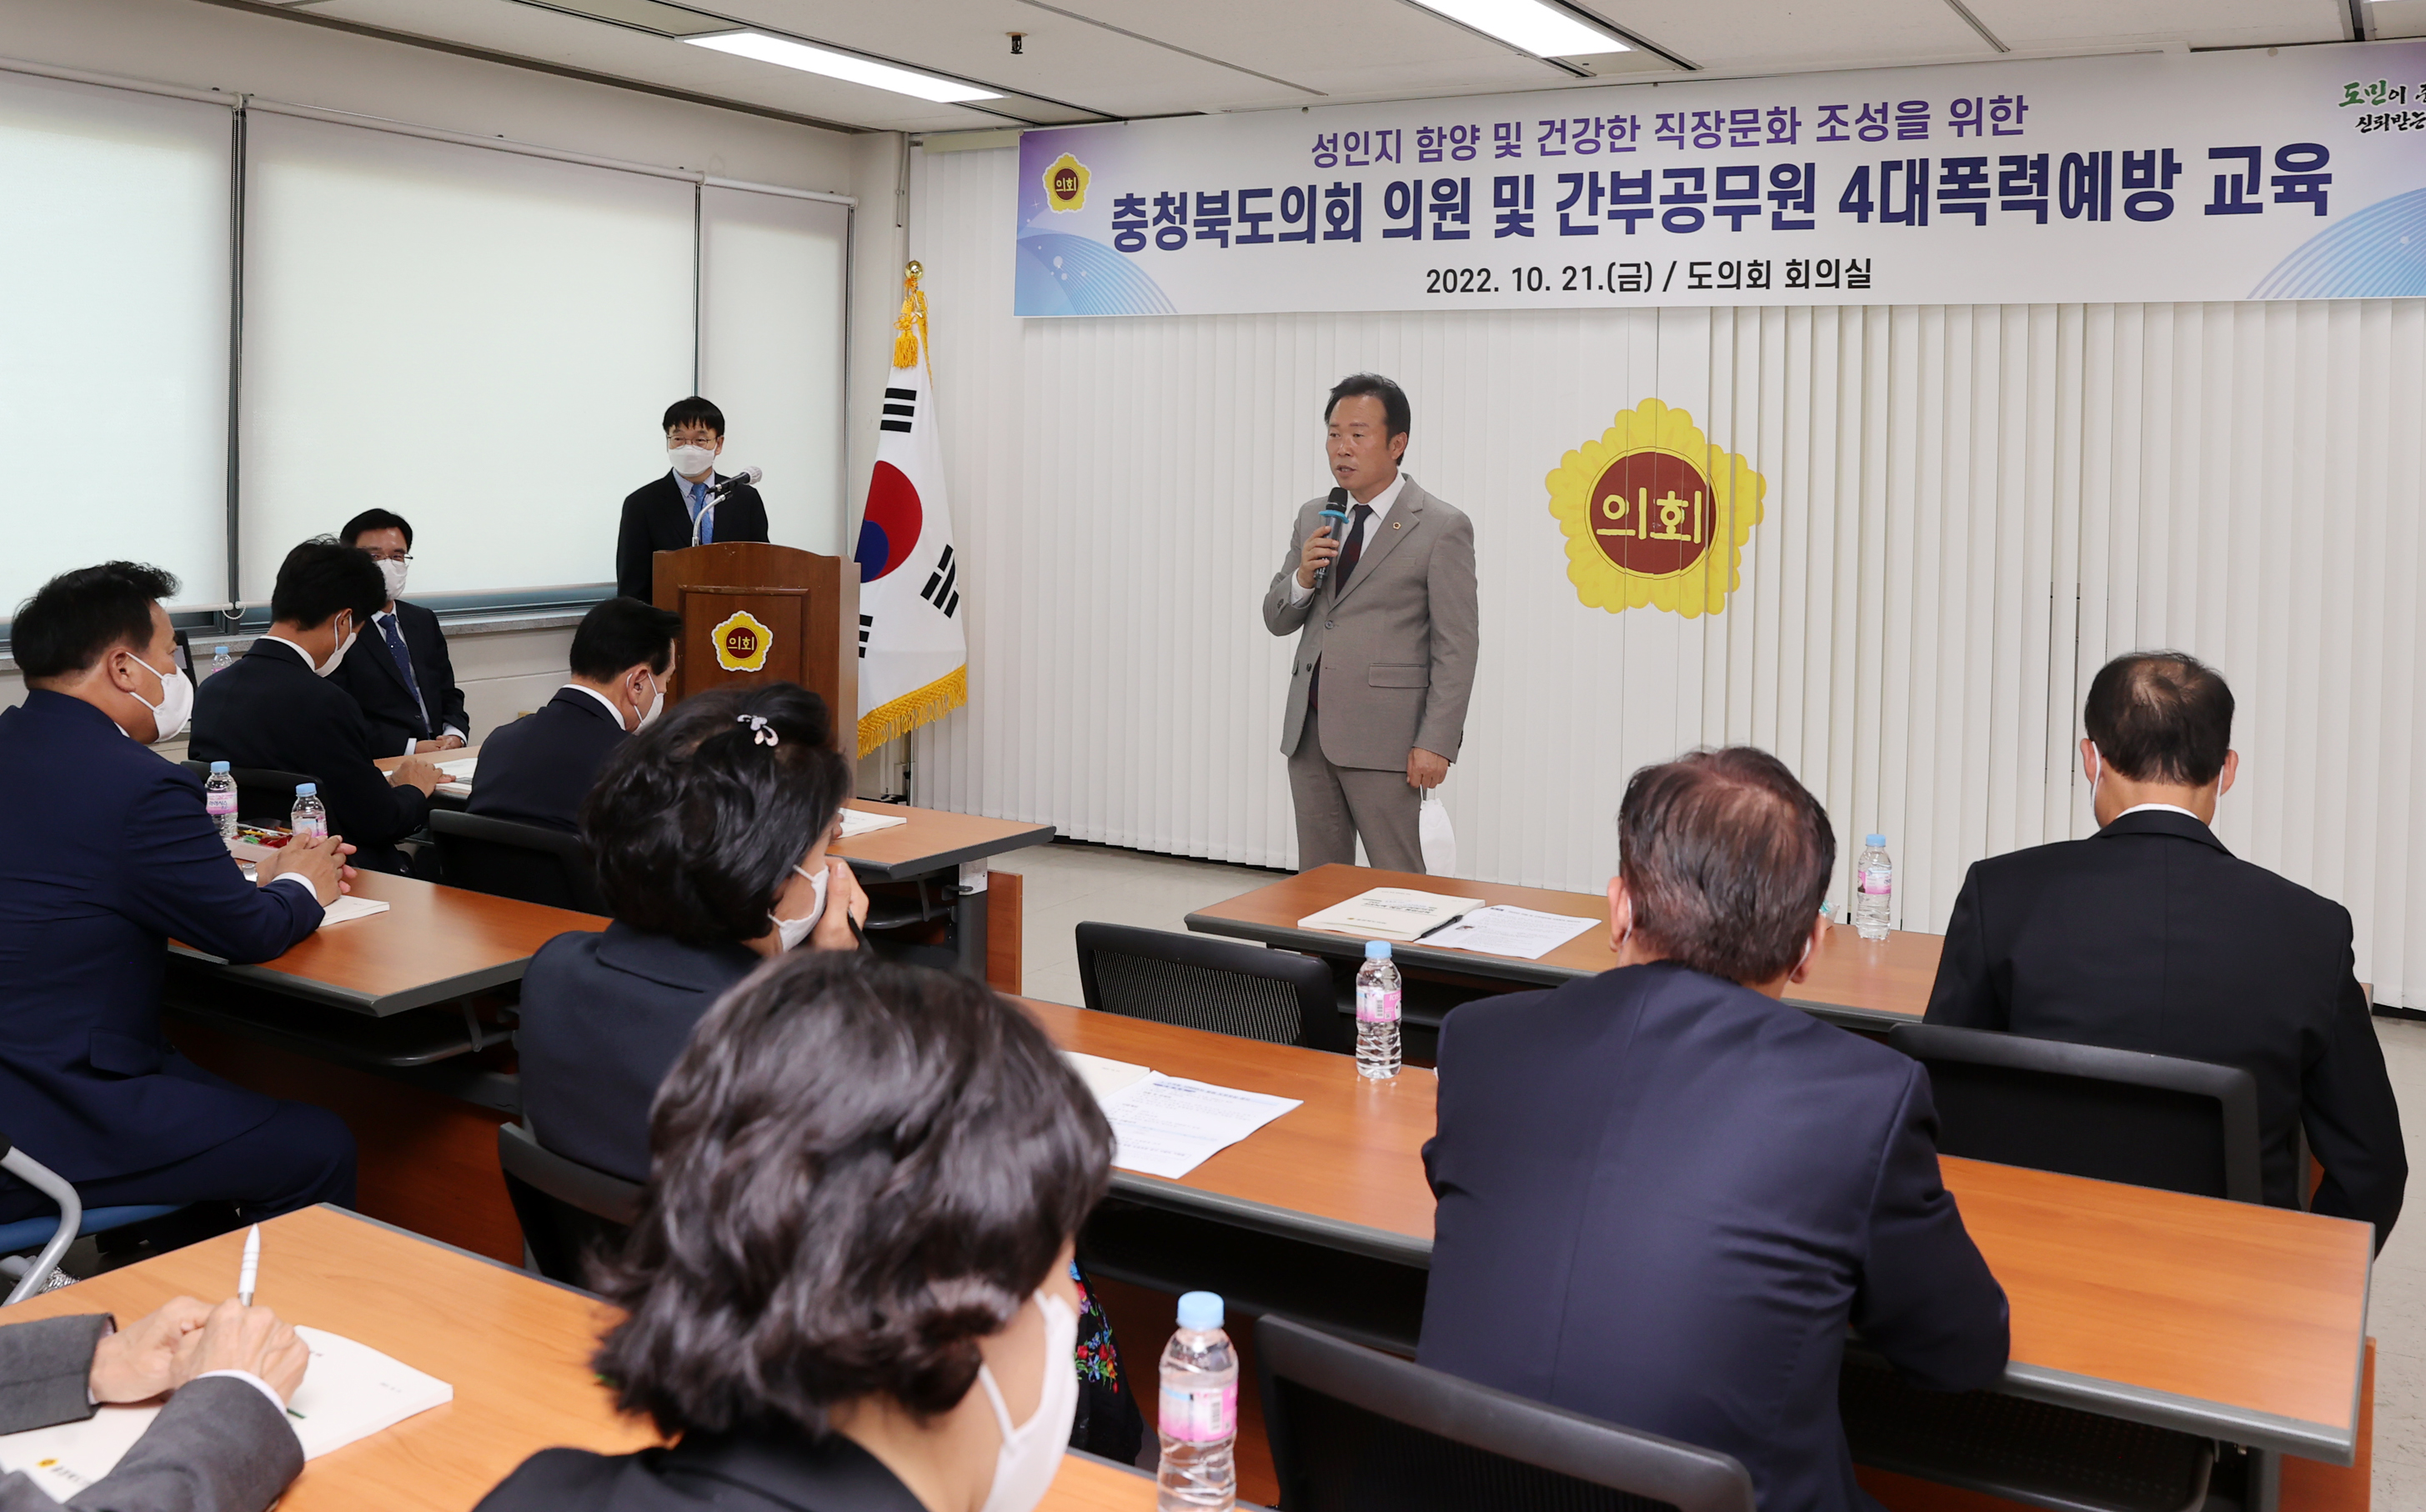 20221021- 충청북도의회 의원 및 간부공무원 4대폭력예방 교육(의회회의실)